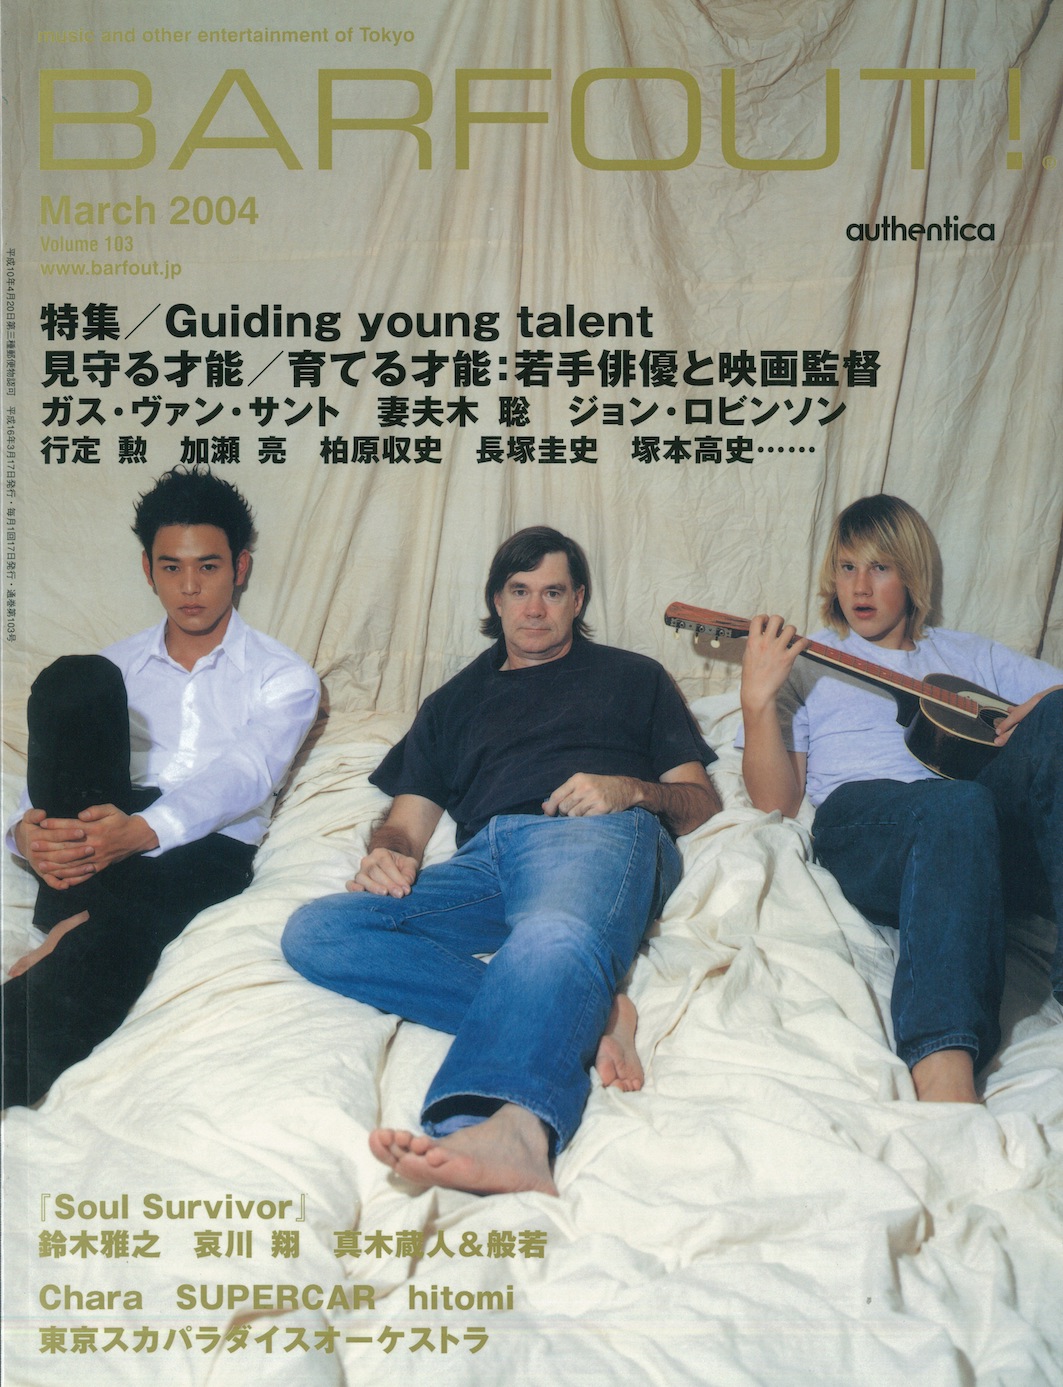 MARCH 2004 VOLUME 103